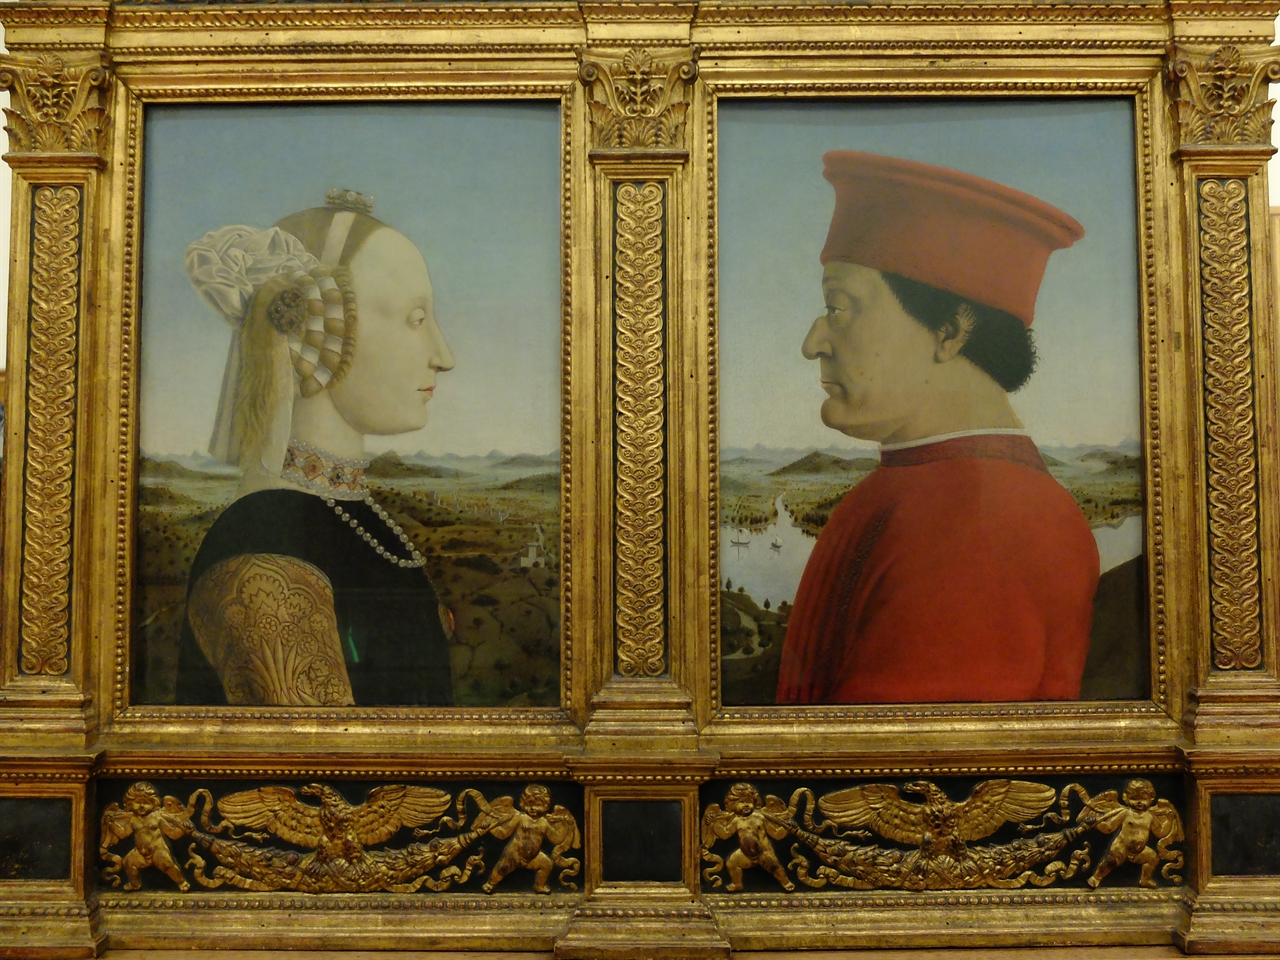 피에로 델라 프란체스카, '우르비노 공작 부부의 초상', 피렌체 우피치 미술관. 우르비노를 부흥시켰던 공작 페데리코 다 몬테펠트로와 부인 바티스타 스포르차의 초상으로 가감없이 진실된 인물 묘사가 돋보이는 초상화입니다.